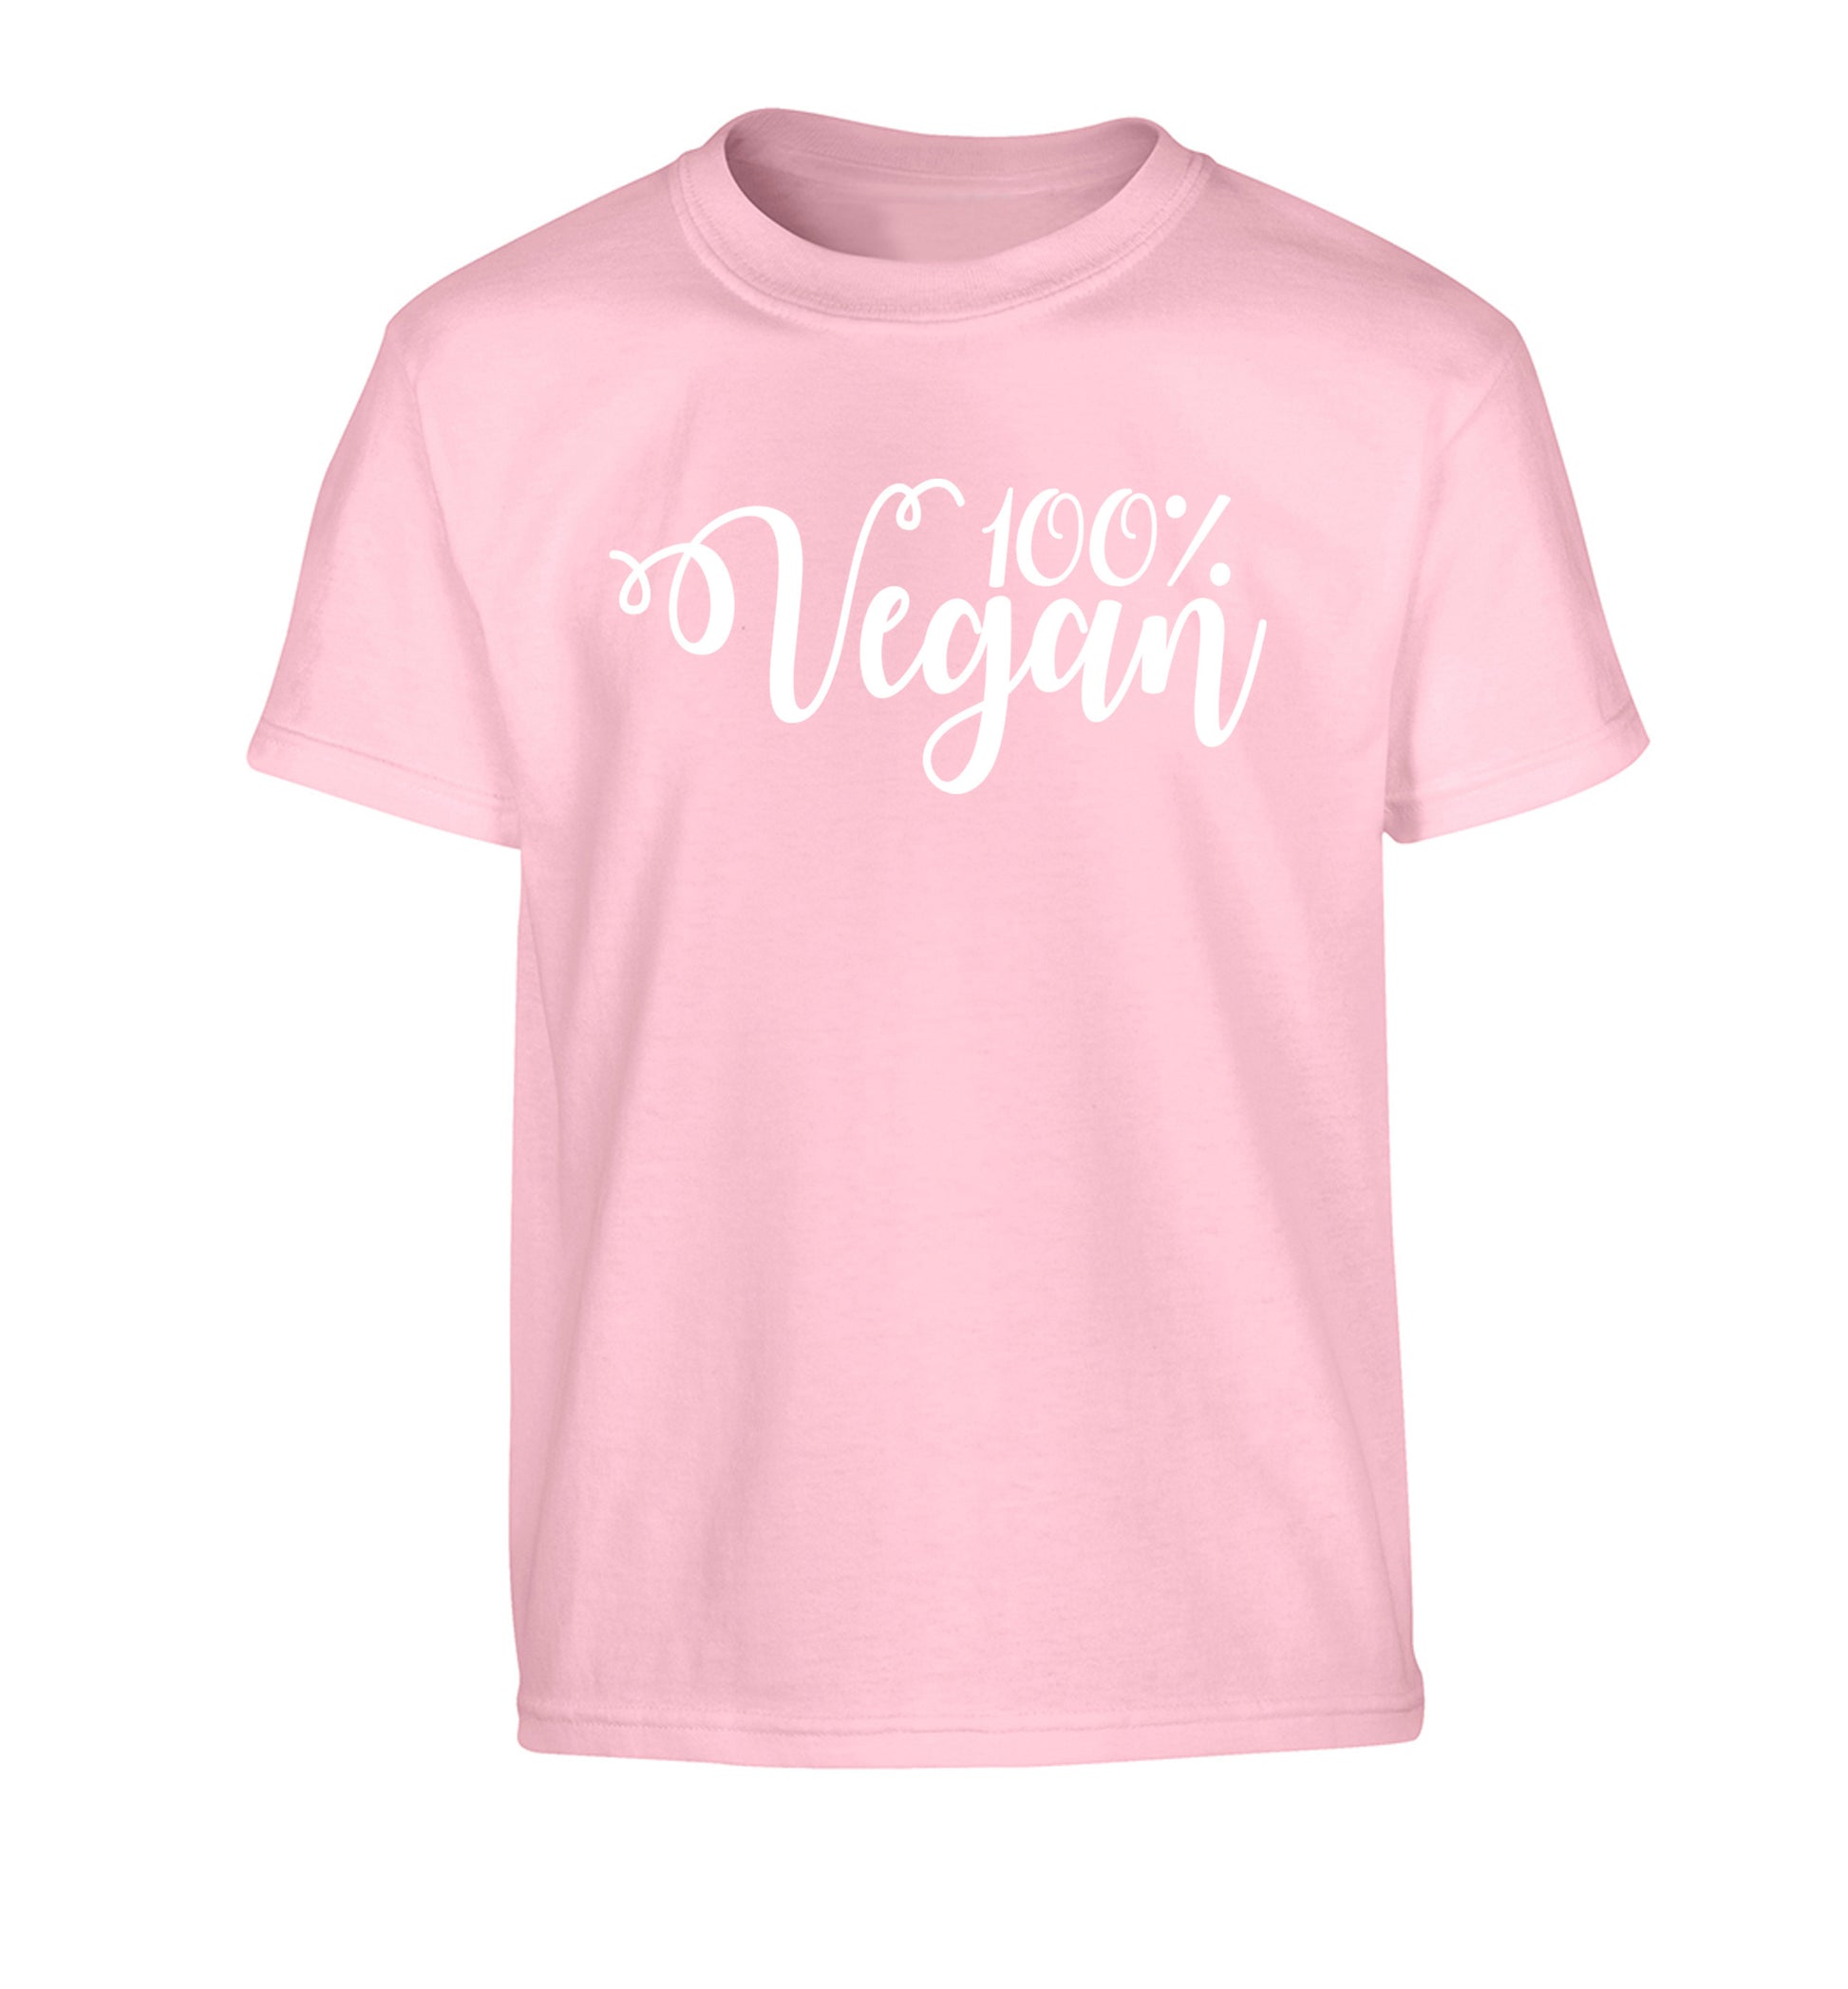 100% Vegan Children's light pink Tshirt 12-14 Years